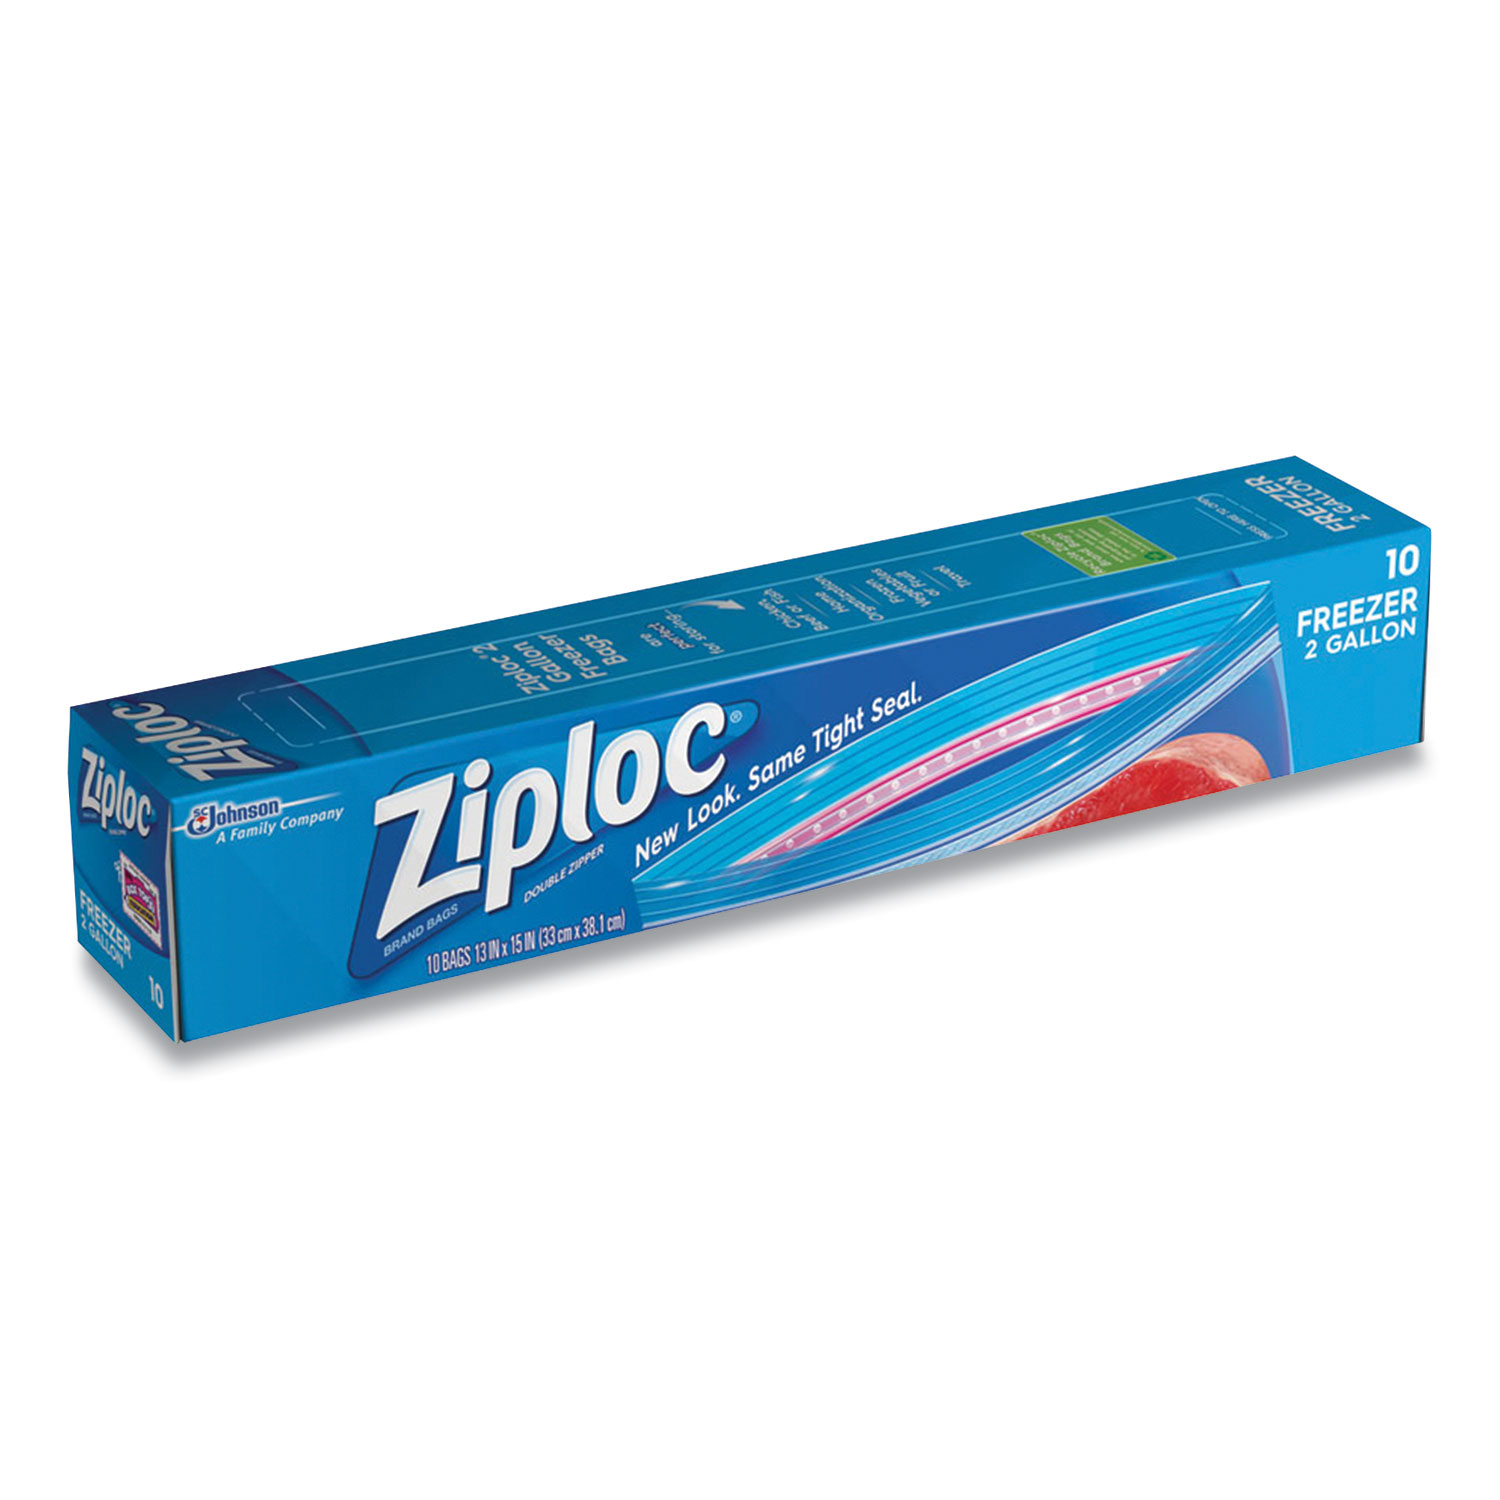  Ziploc 665258 Zipper Freezer Bags, 2 gal, 13 x 15, Clear, 10/Box (SJN24419504) 